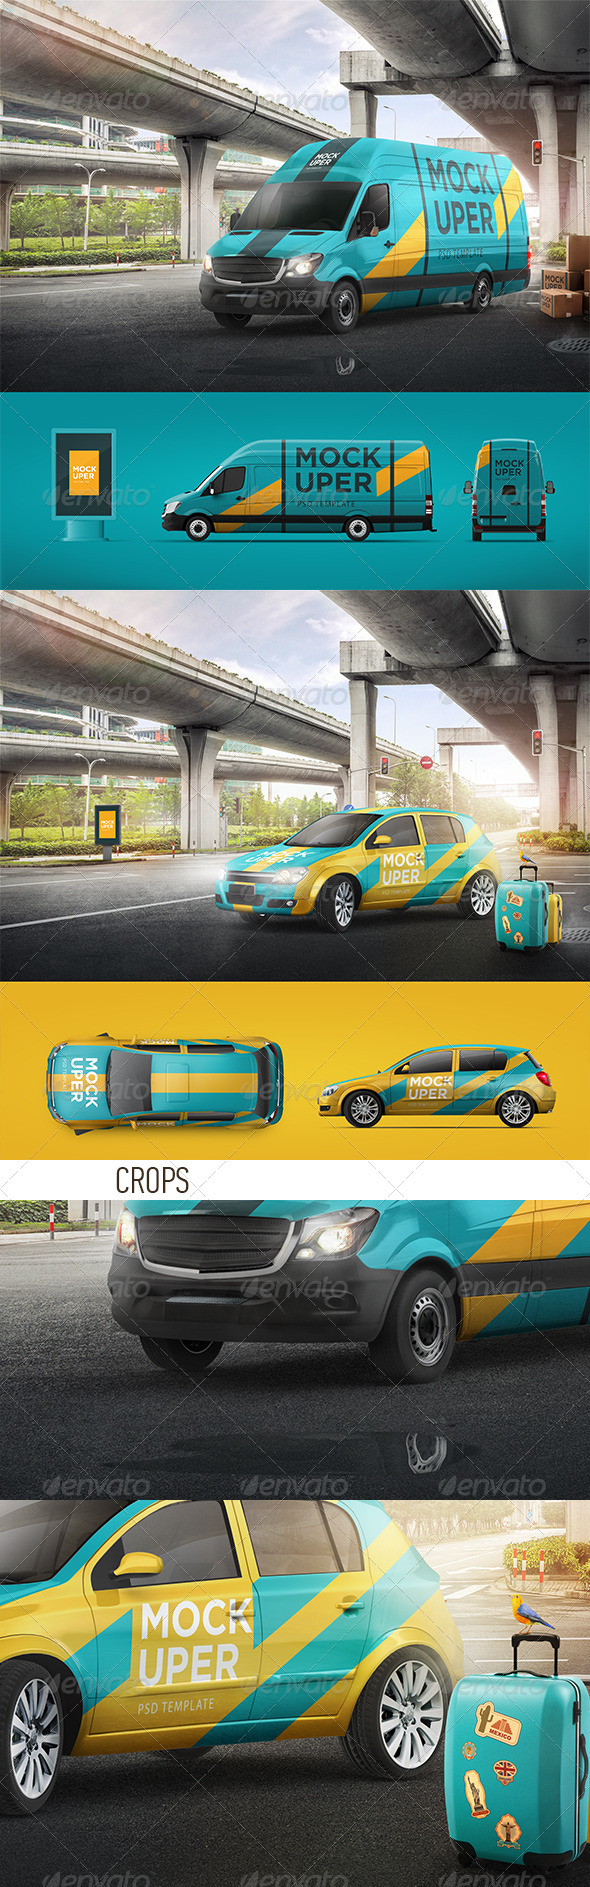 Van & Car Mock-Ups (2 PSD)